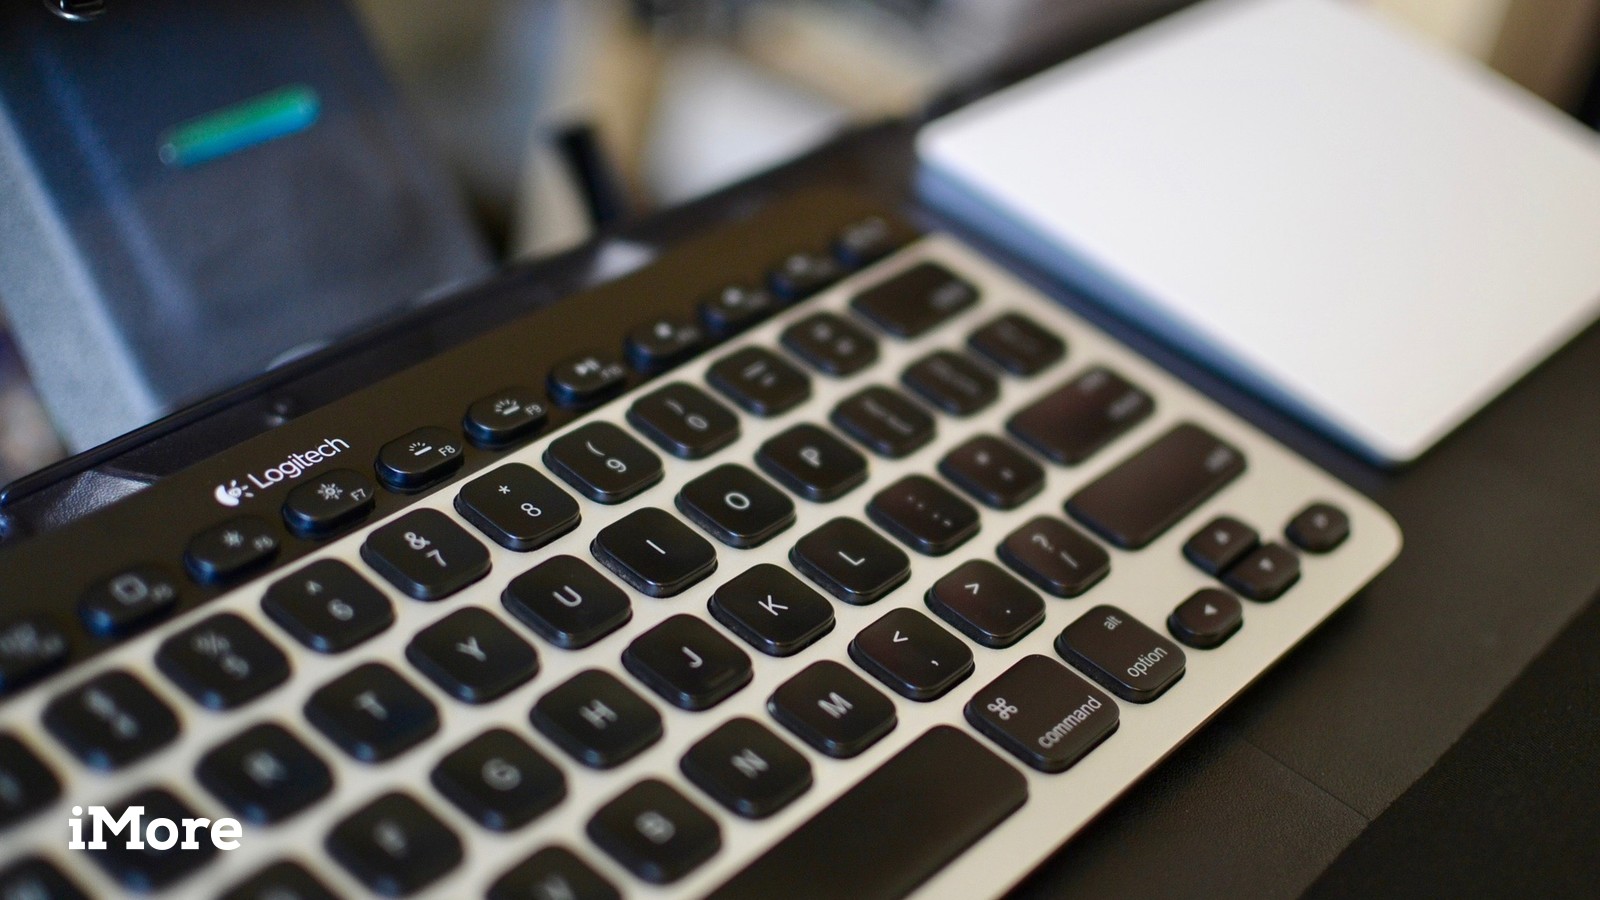 Best Usb Wireless Keyboard For Mac